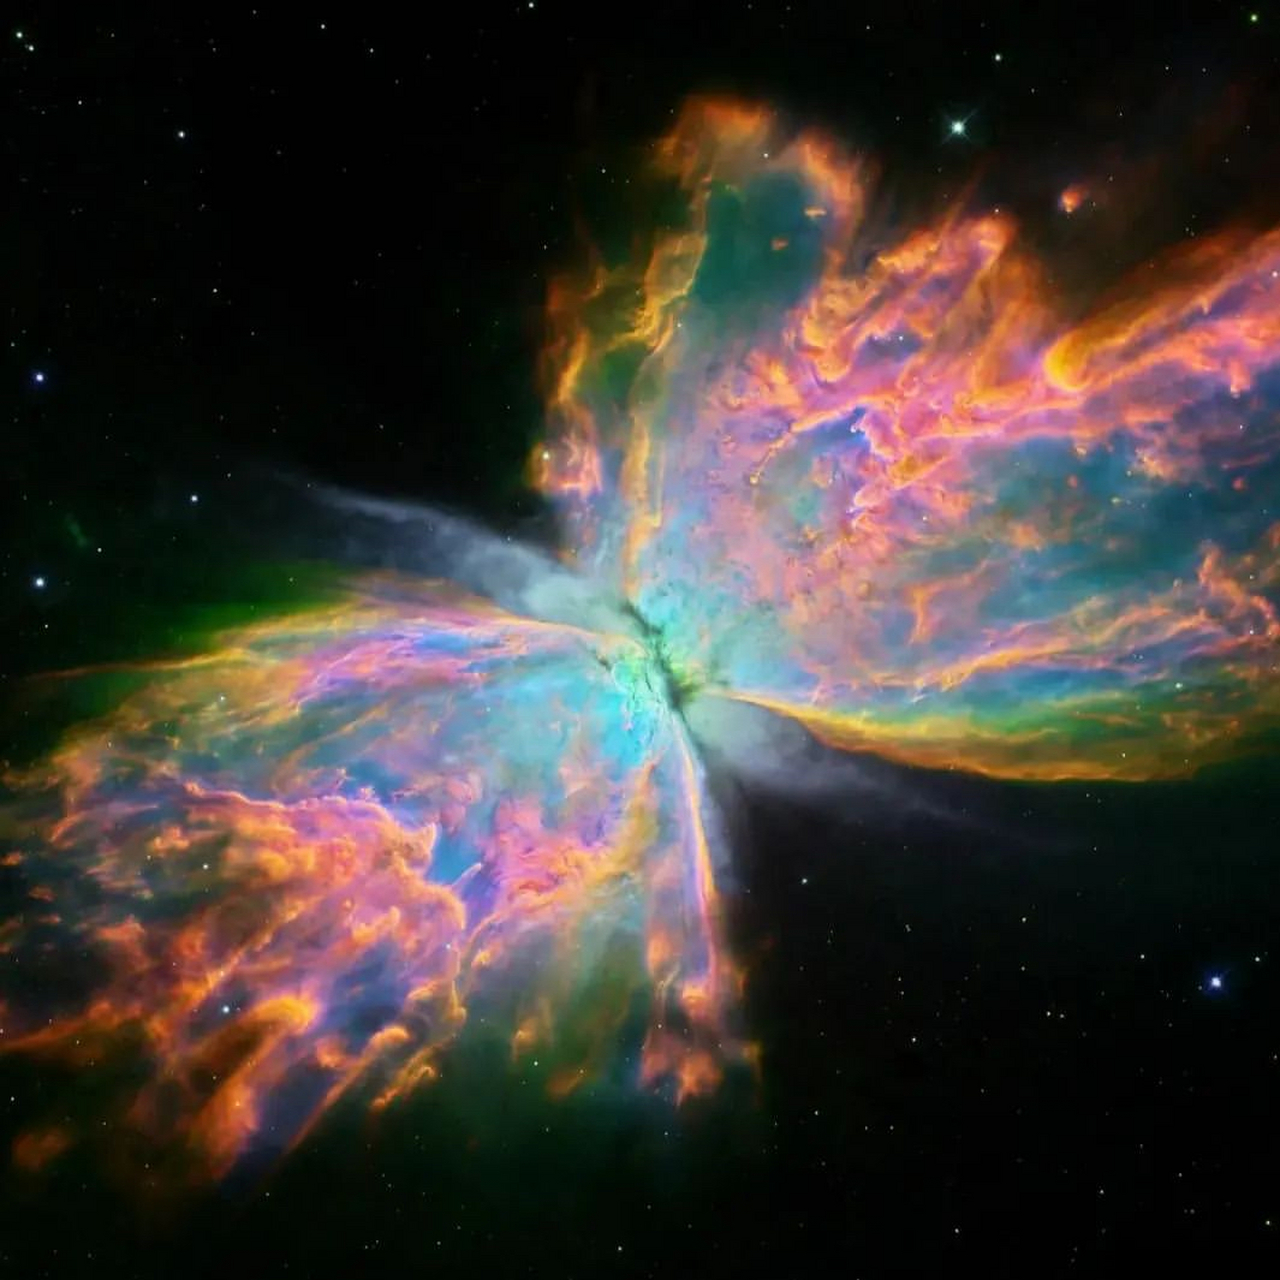 探秘蝴蝶星云,宇宙中最美的天体  蝴蝶星云是宇宙中最美的天体之一,本